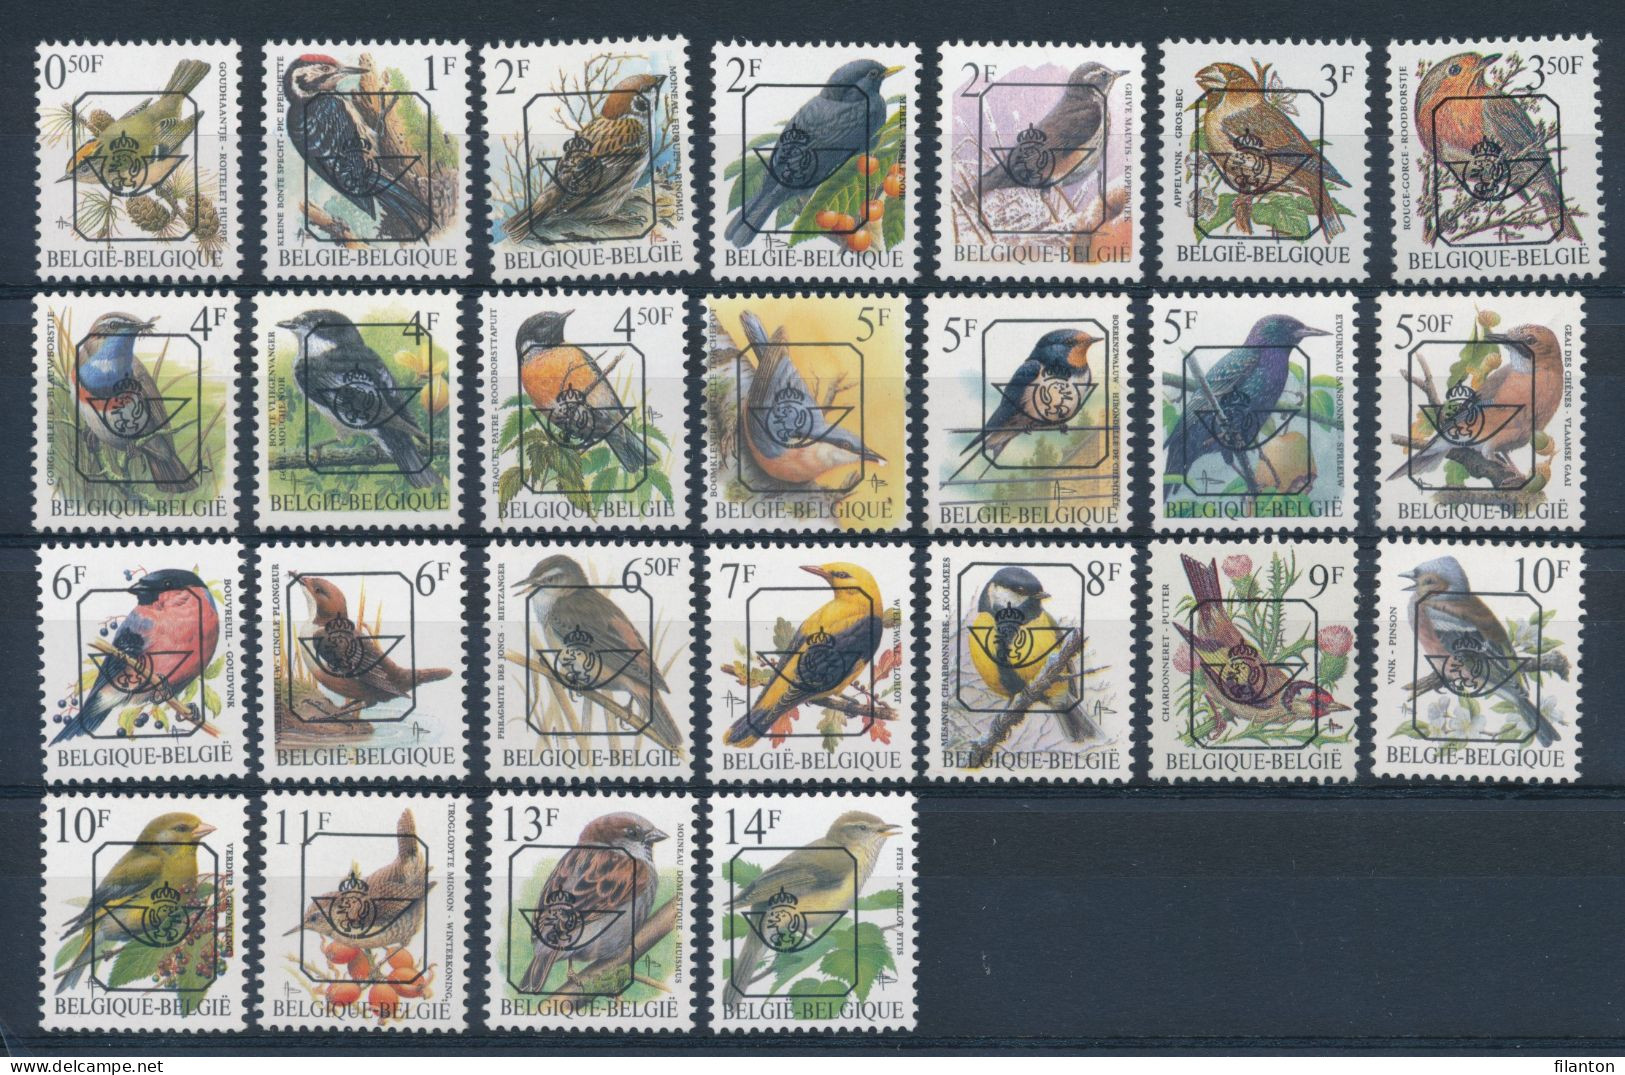 BELGIE - Preo Selectie Nr 537 - PRECANCELS - BUZIN - MNH** - Typos 1986-96 (Oiseaux)